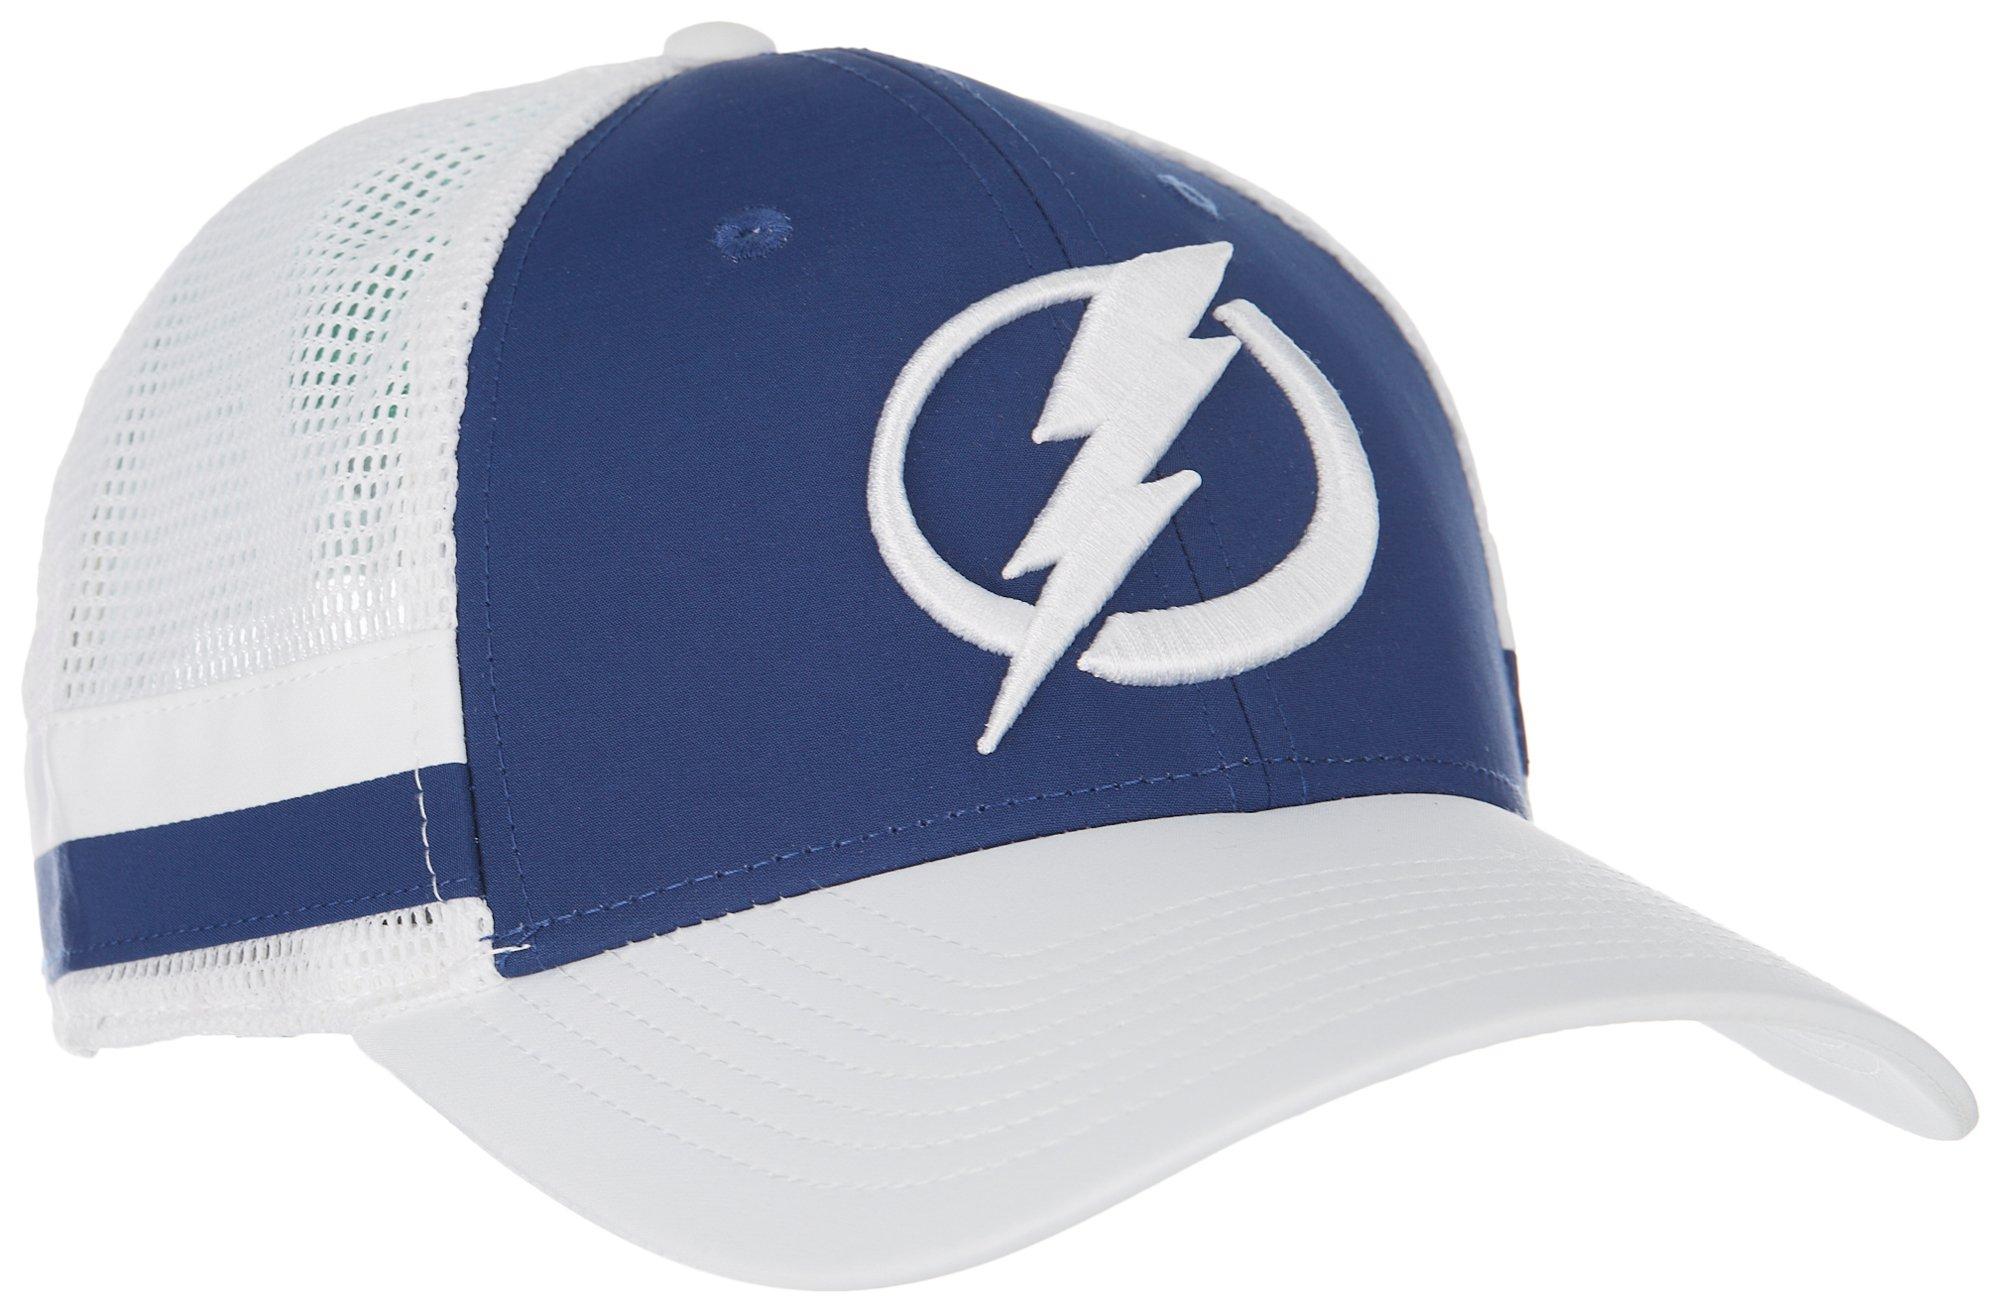 Tampa Bay Lightning Hat for sale